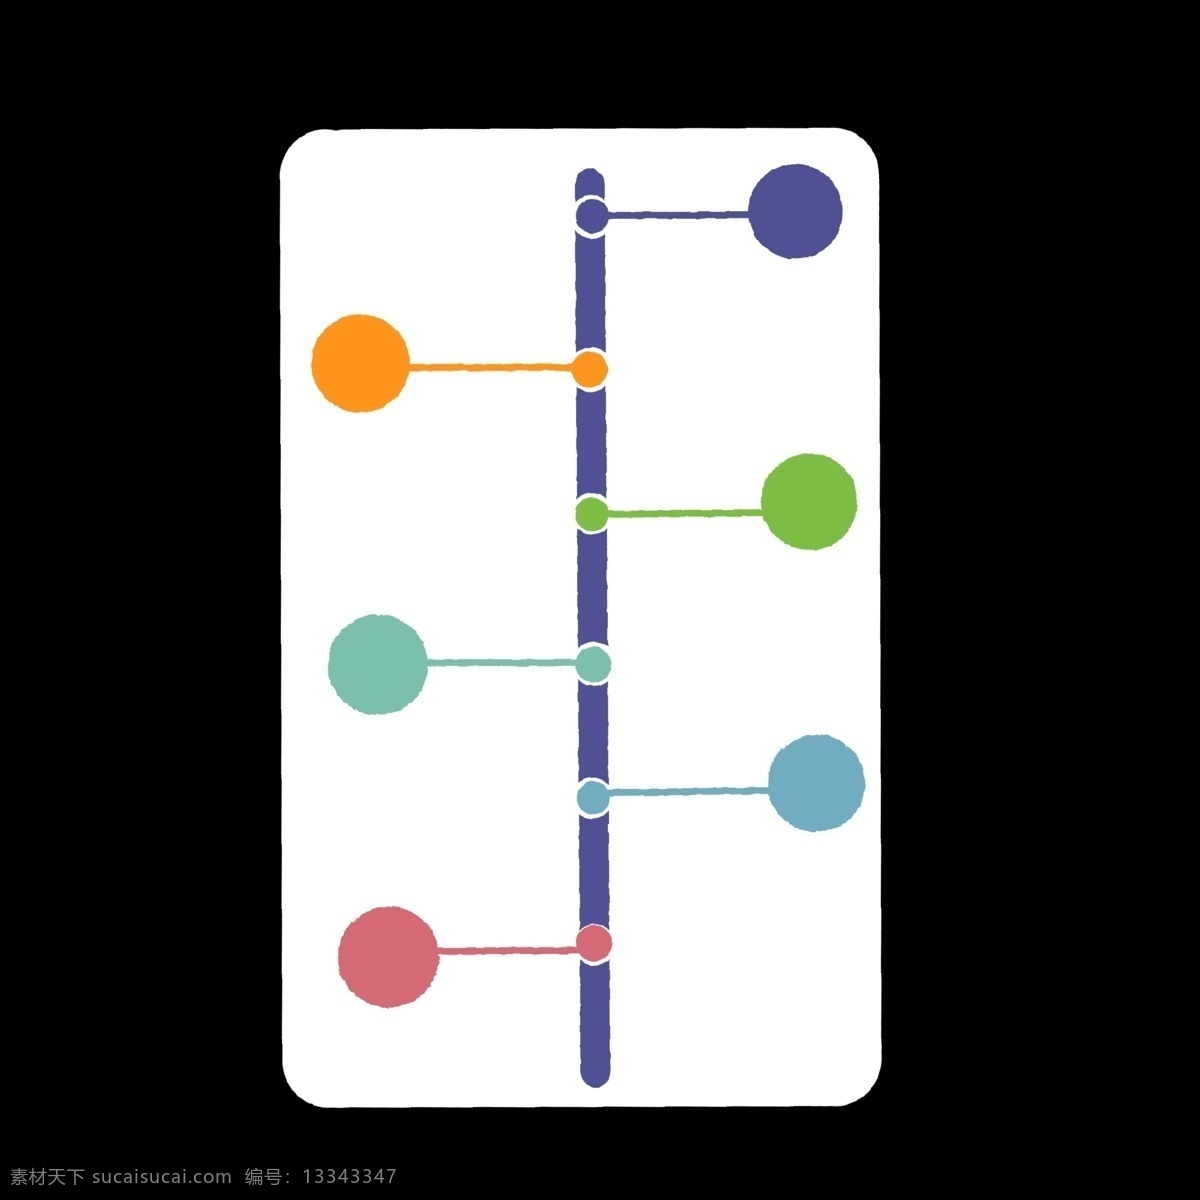 线状 分类 分解 图标 线条 彩色 分类表 分化 分开 ppt专用 卡通 简约 简洁 简单 五颜六色